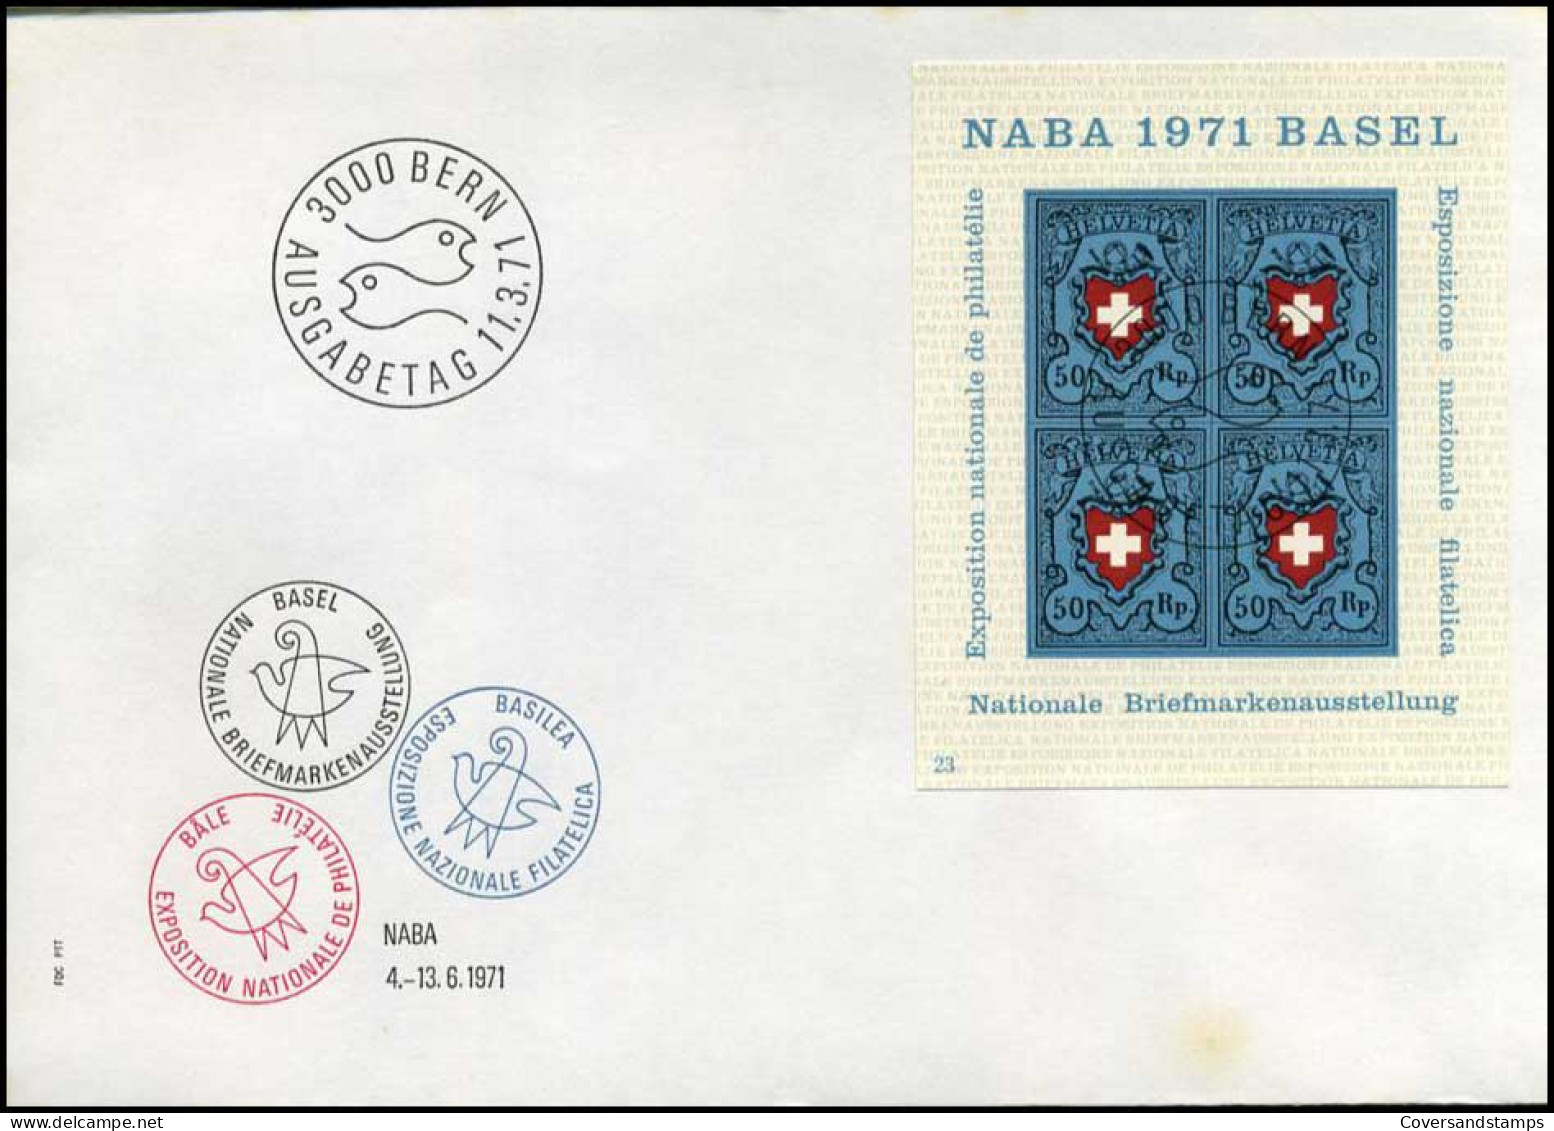 Zwitserland - FDC - NABA 1971 Basel - FDC